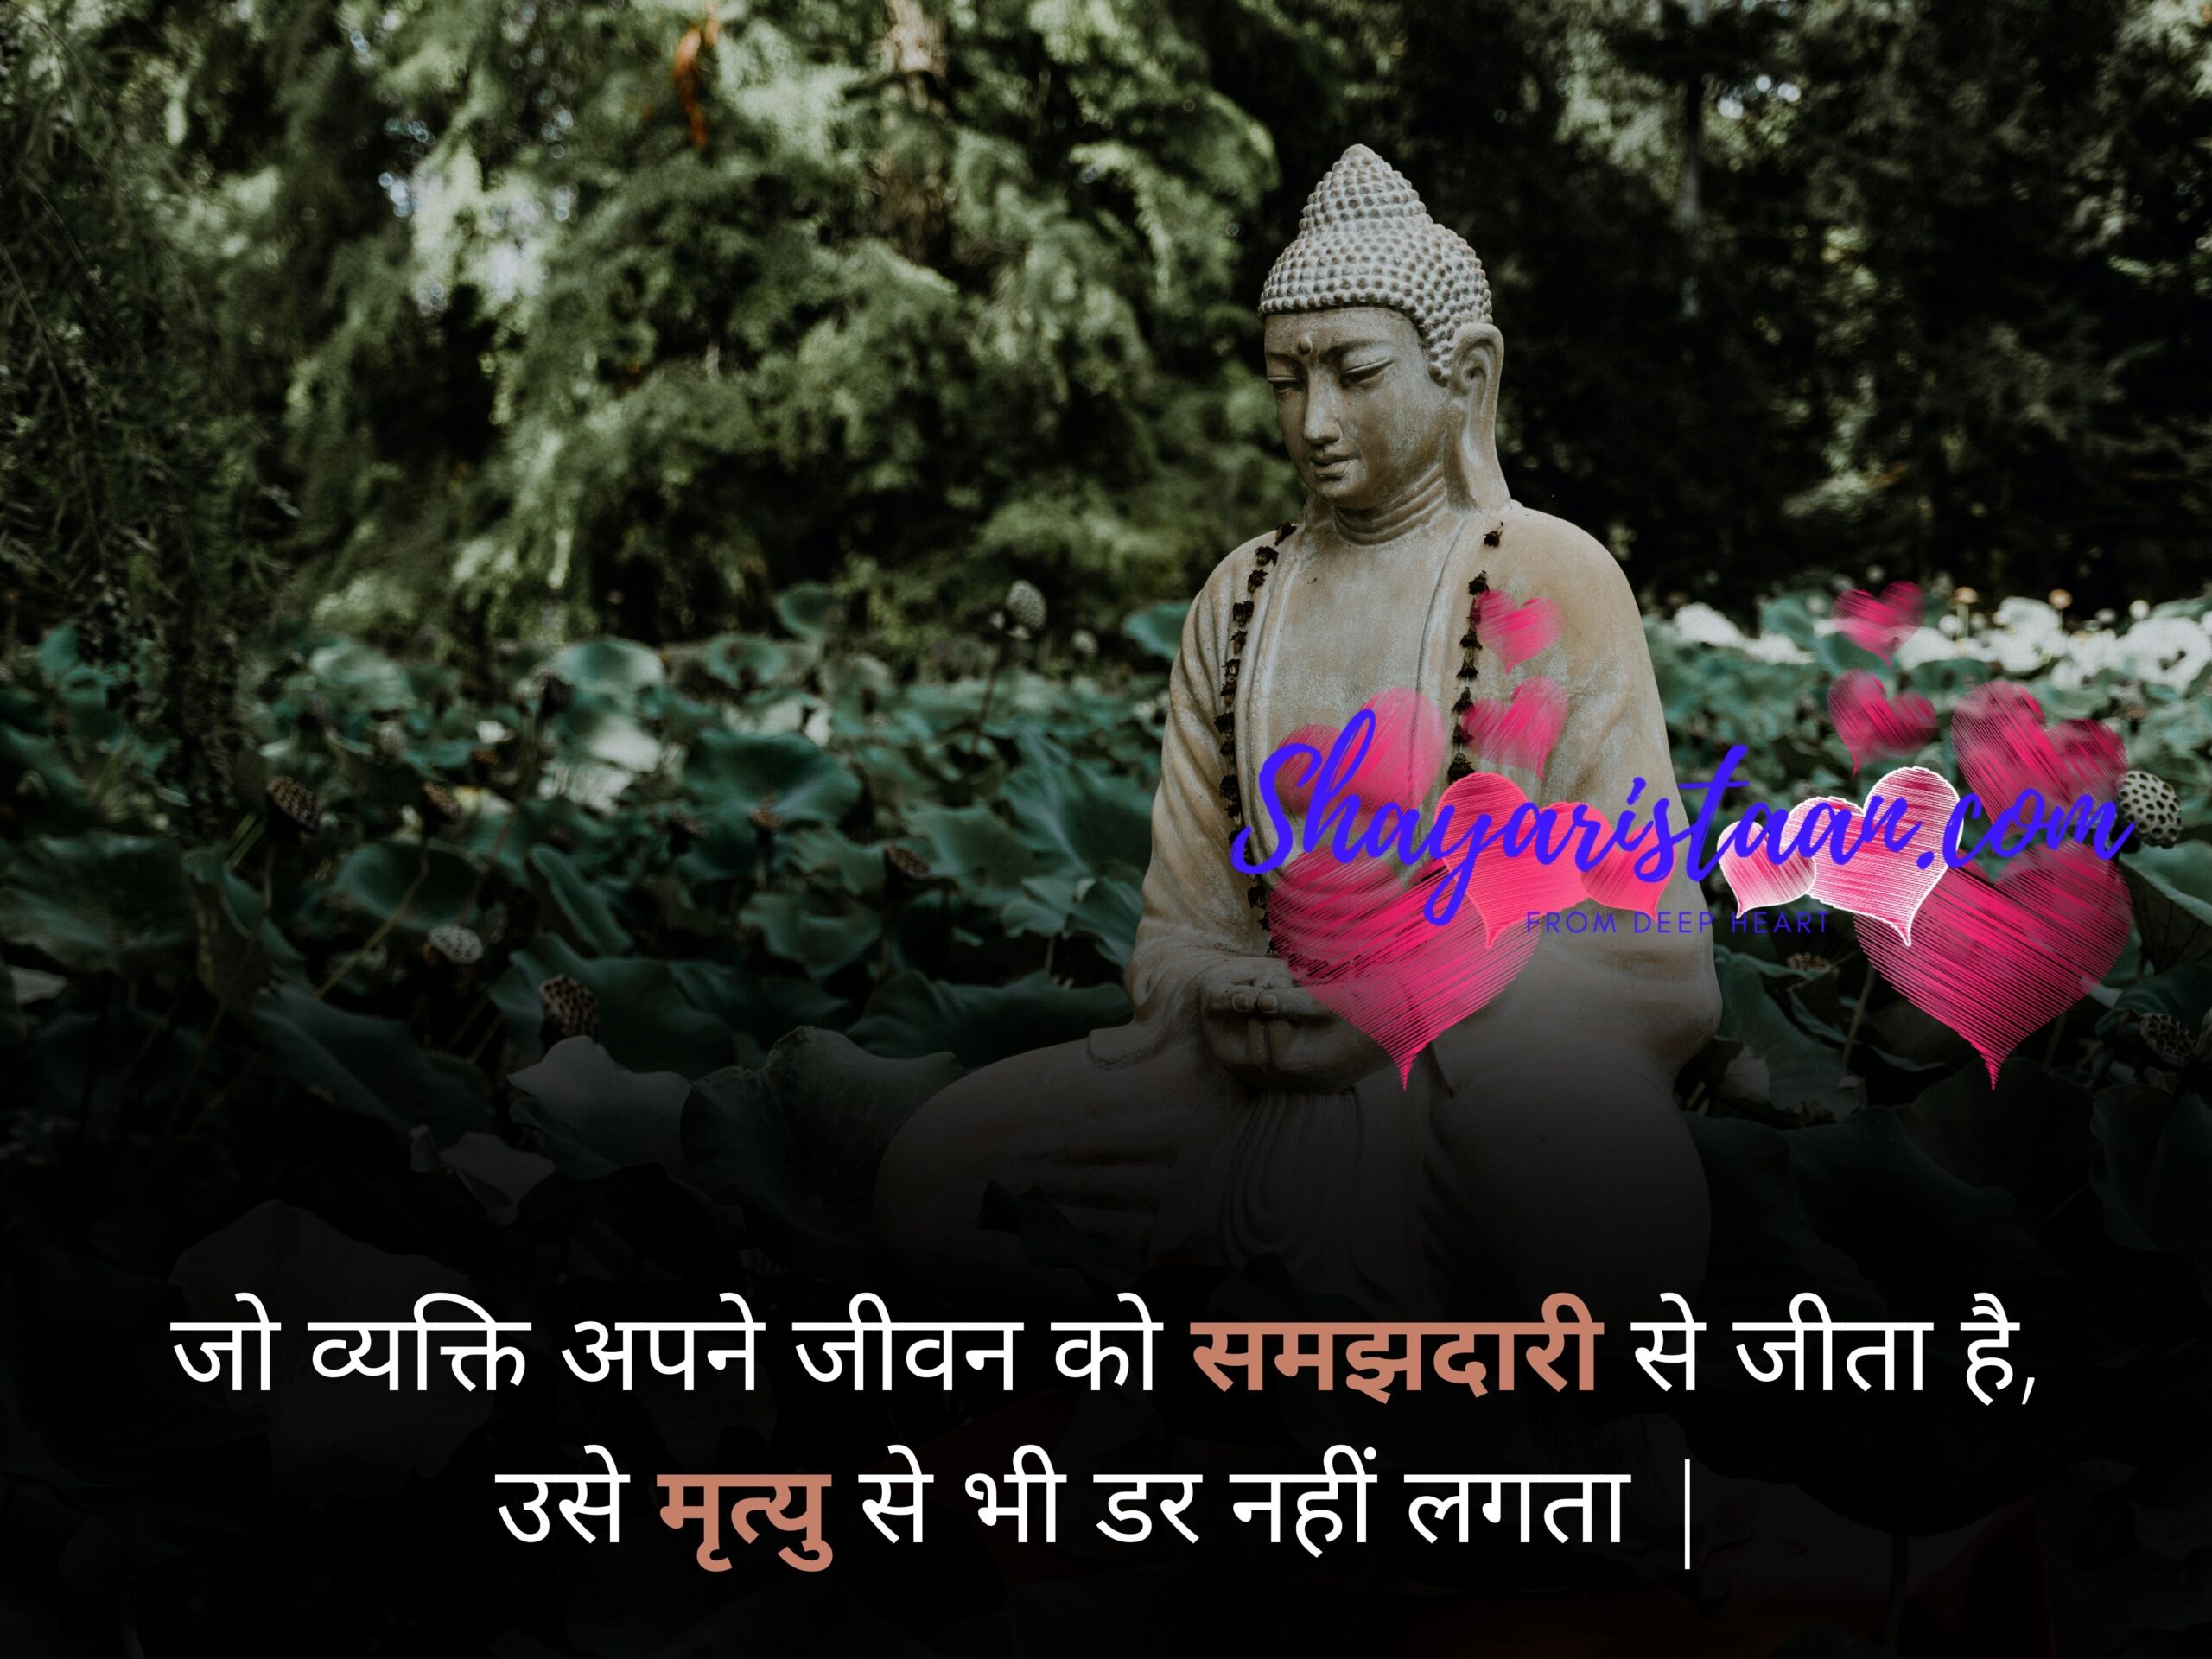 buddha teachings | जो व्यक्ति अपने जीवन को समझदारी से जीता है, उसे मृत्यु से भी डर नहीं लगता |